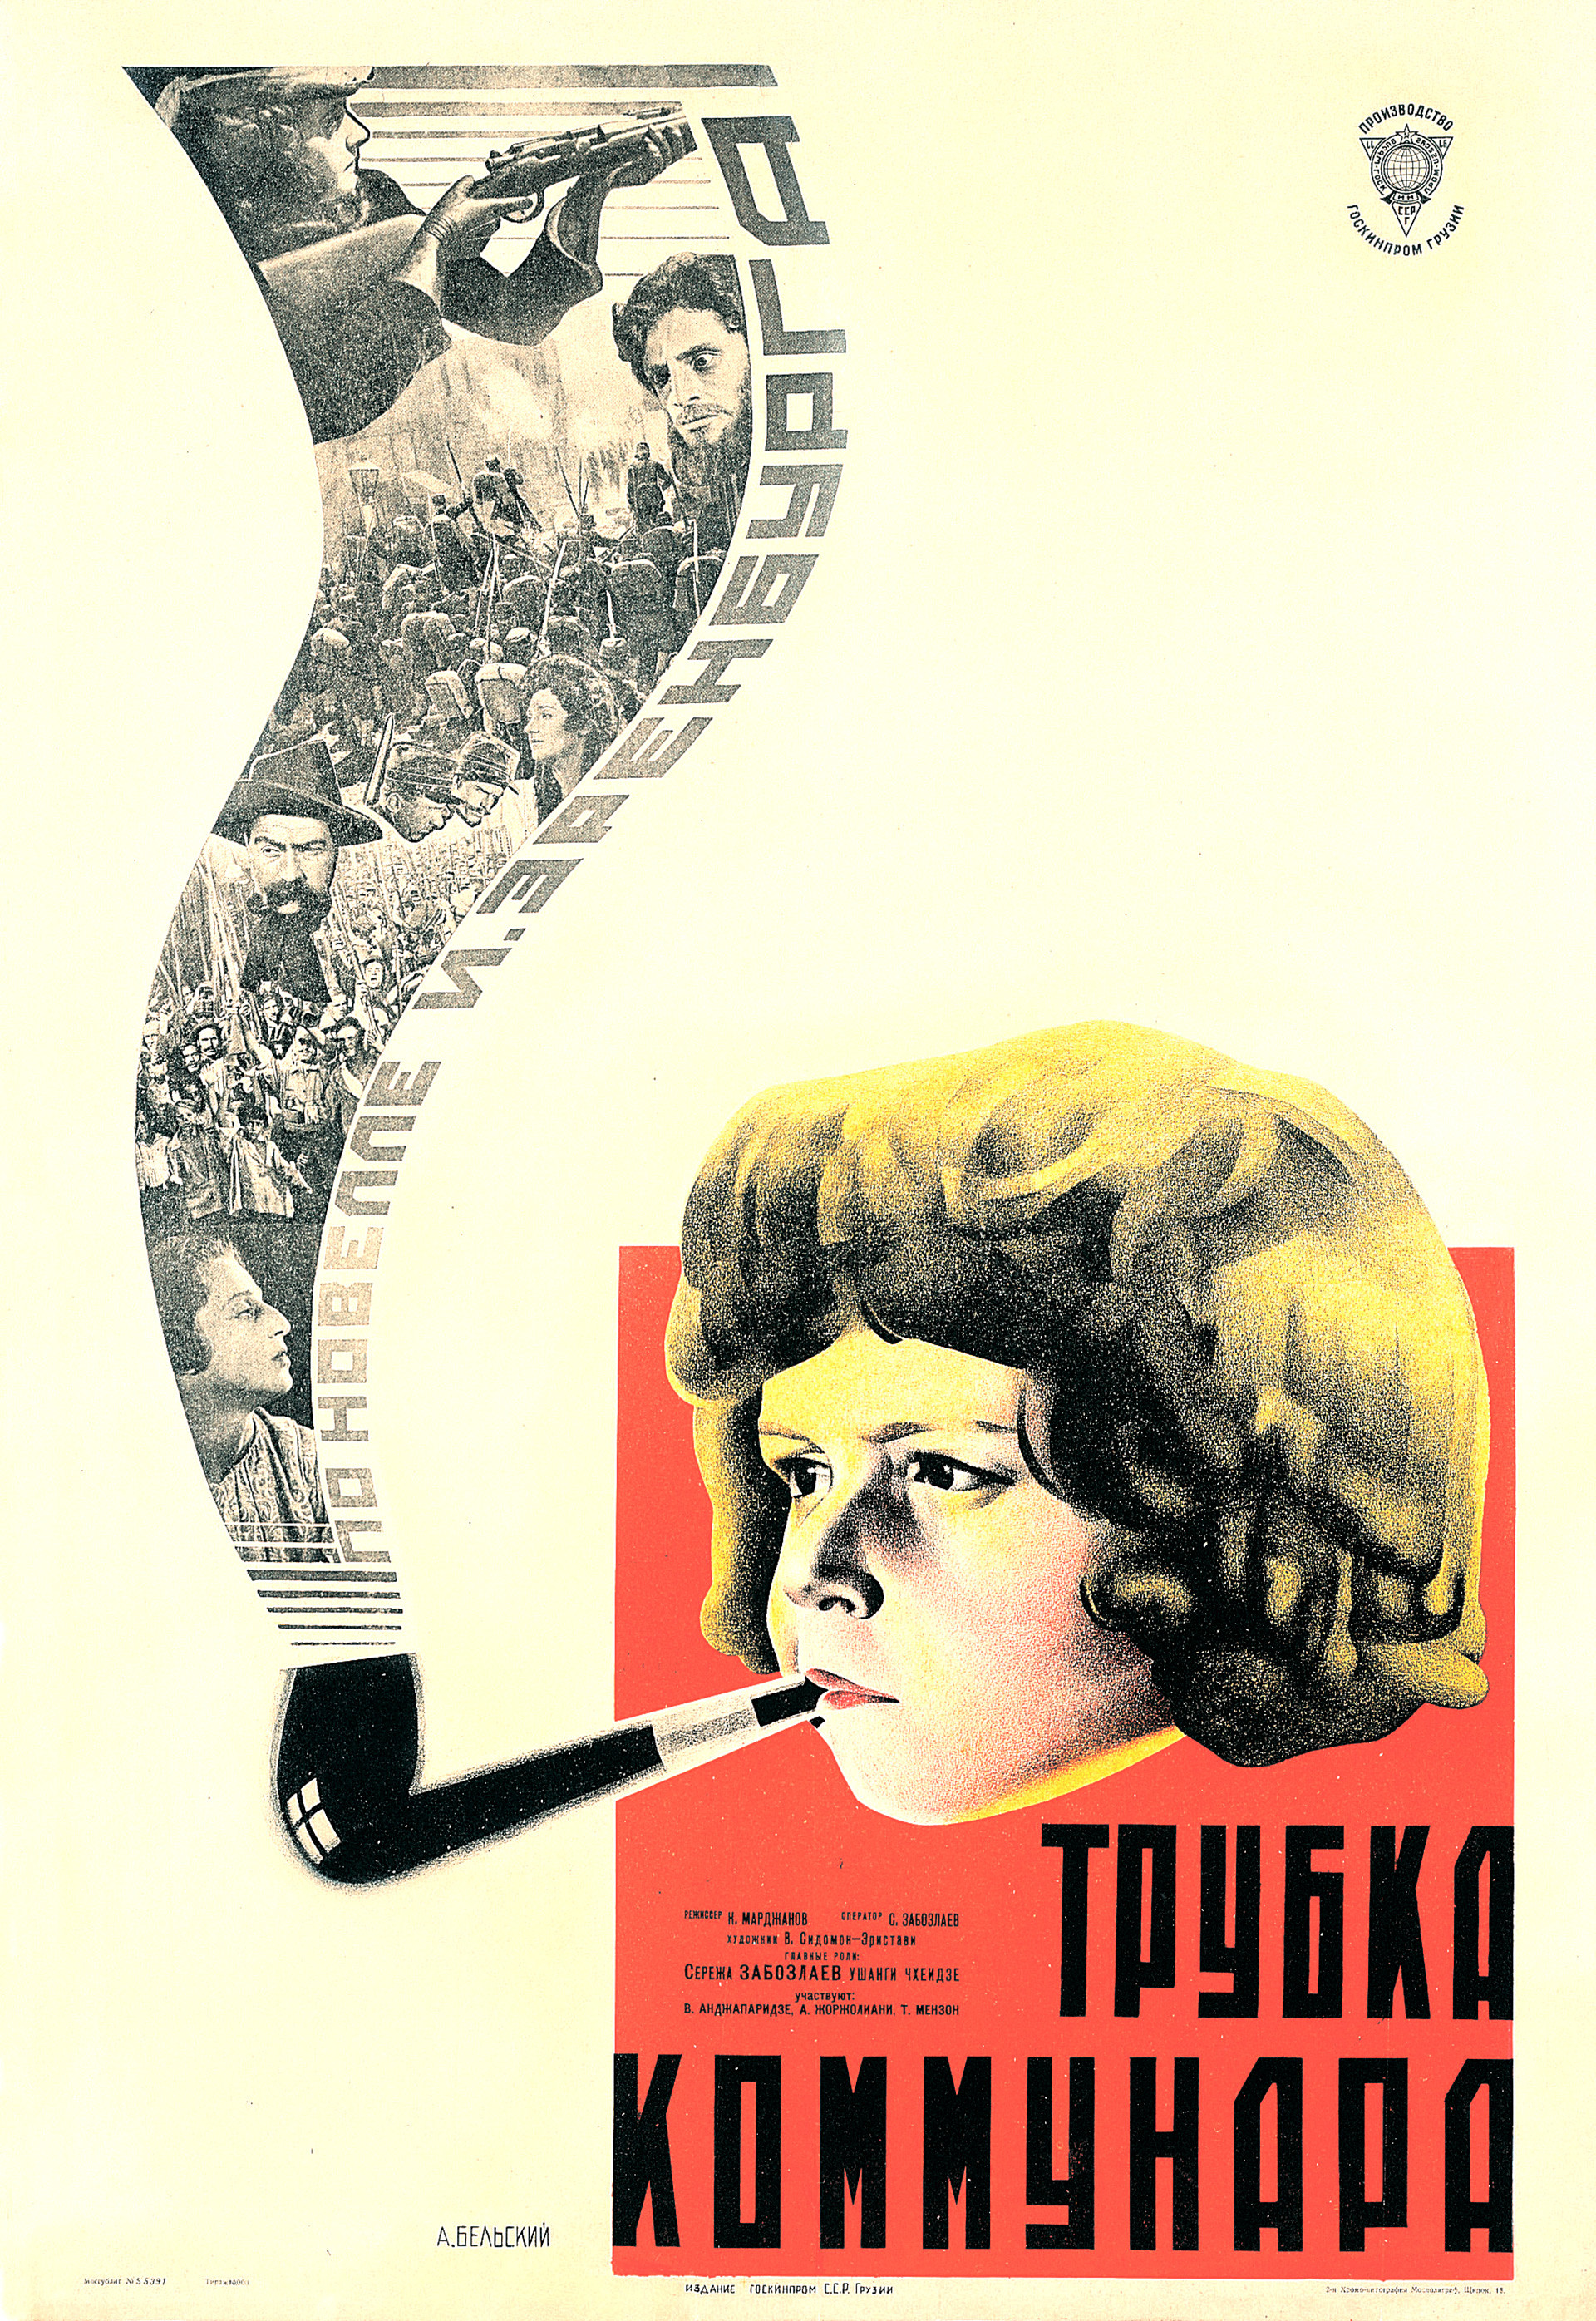 Постер за филм „Лула комунара“ (1929), аутор Анатолиј Белски